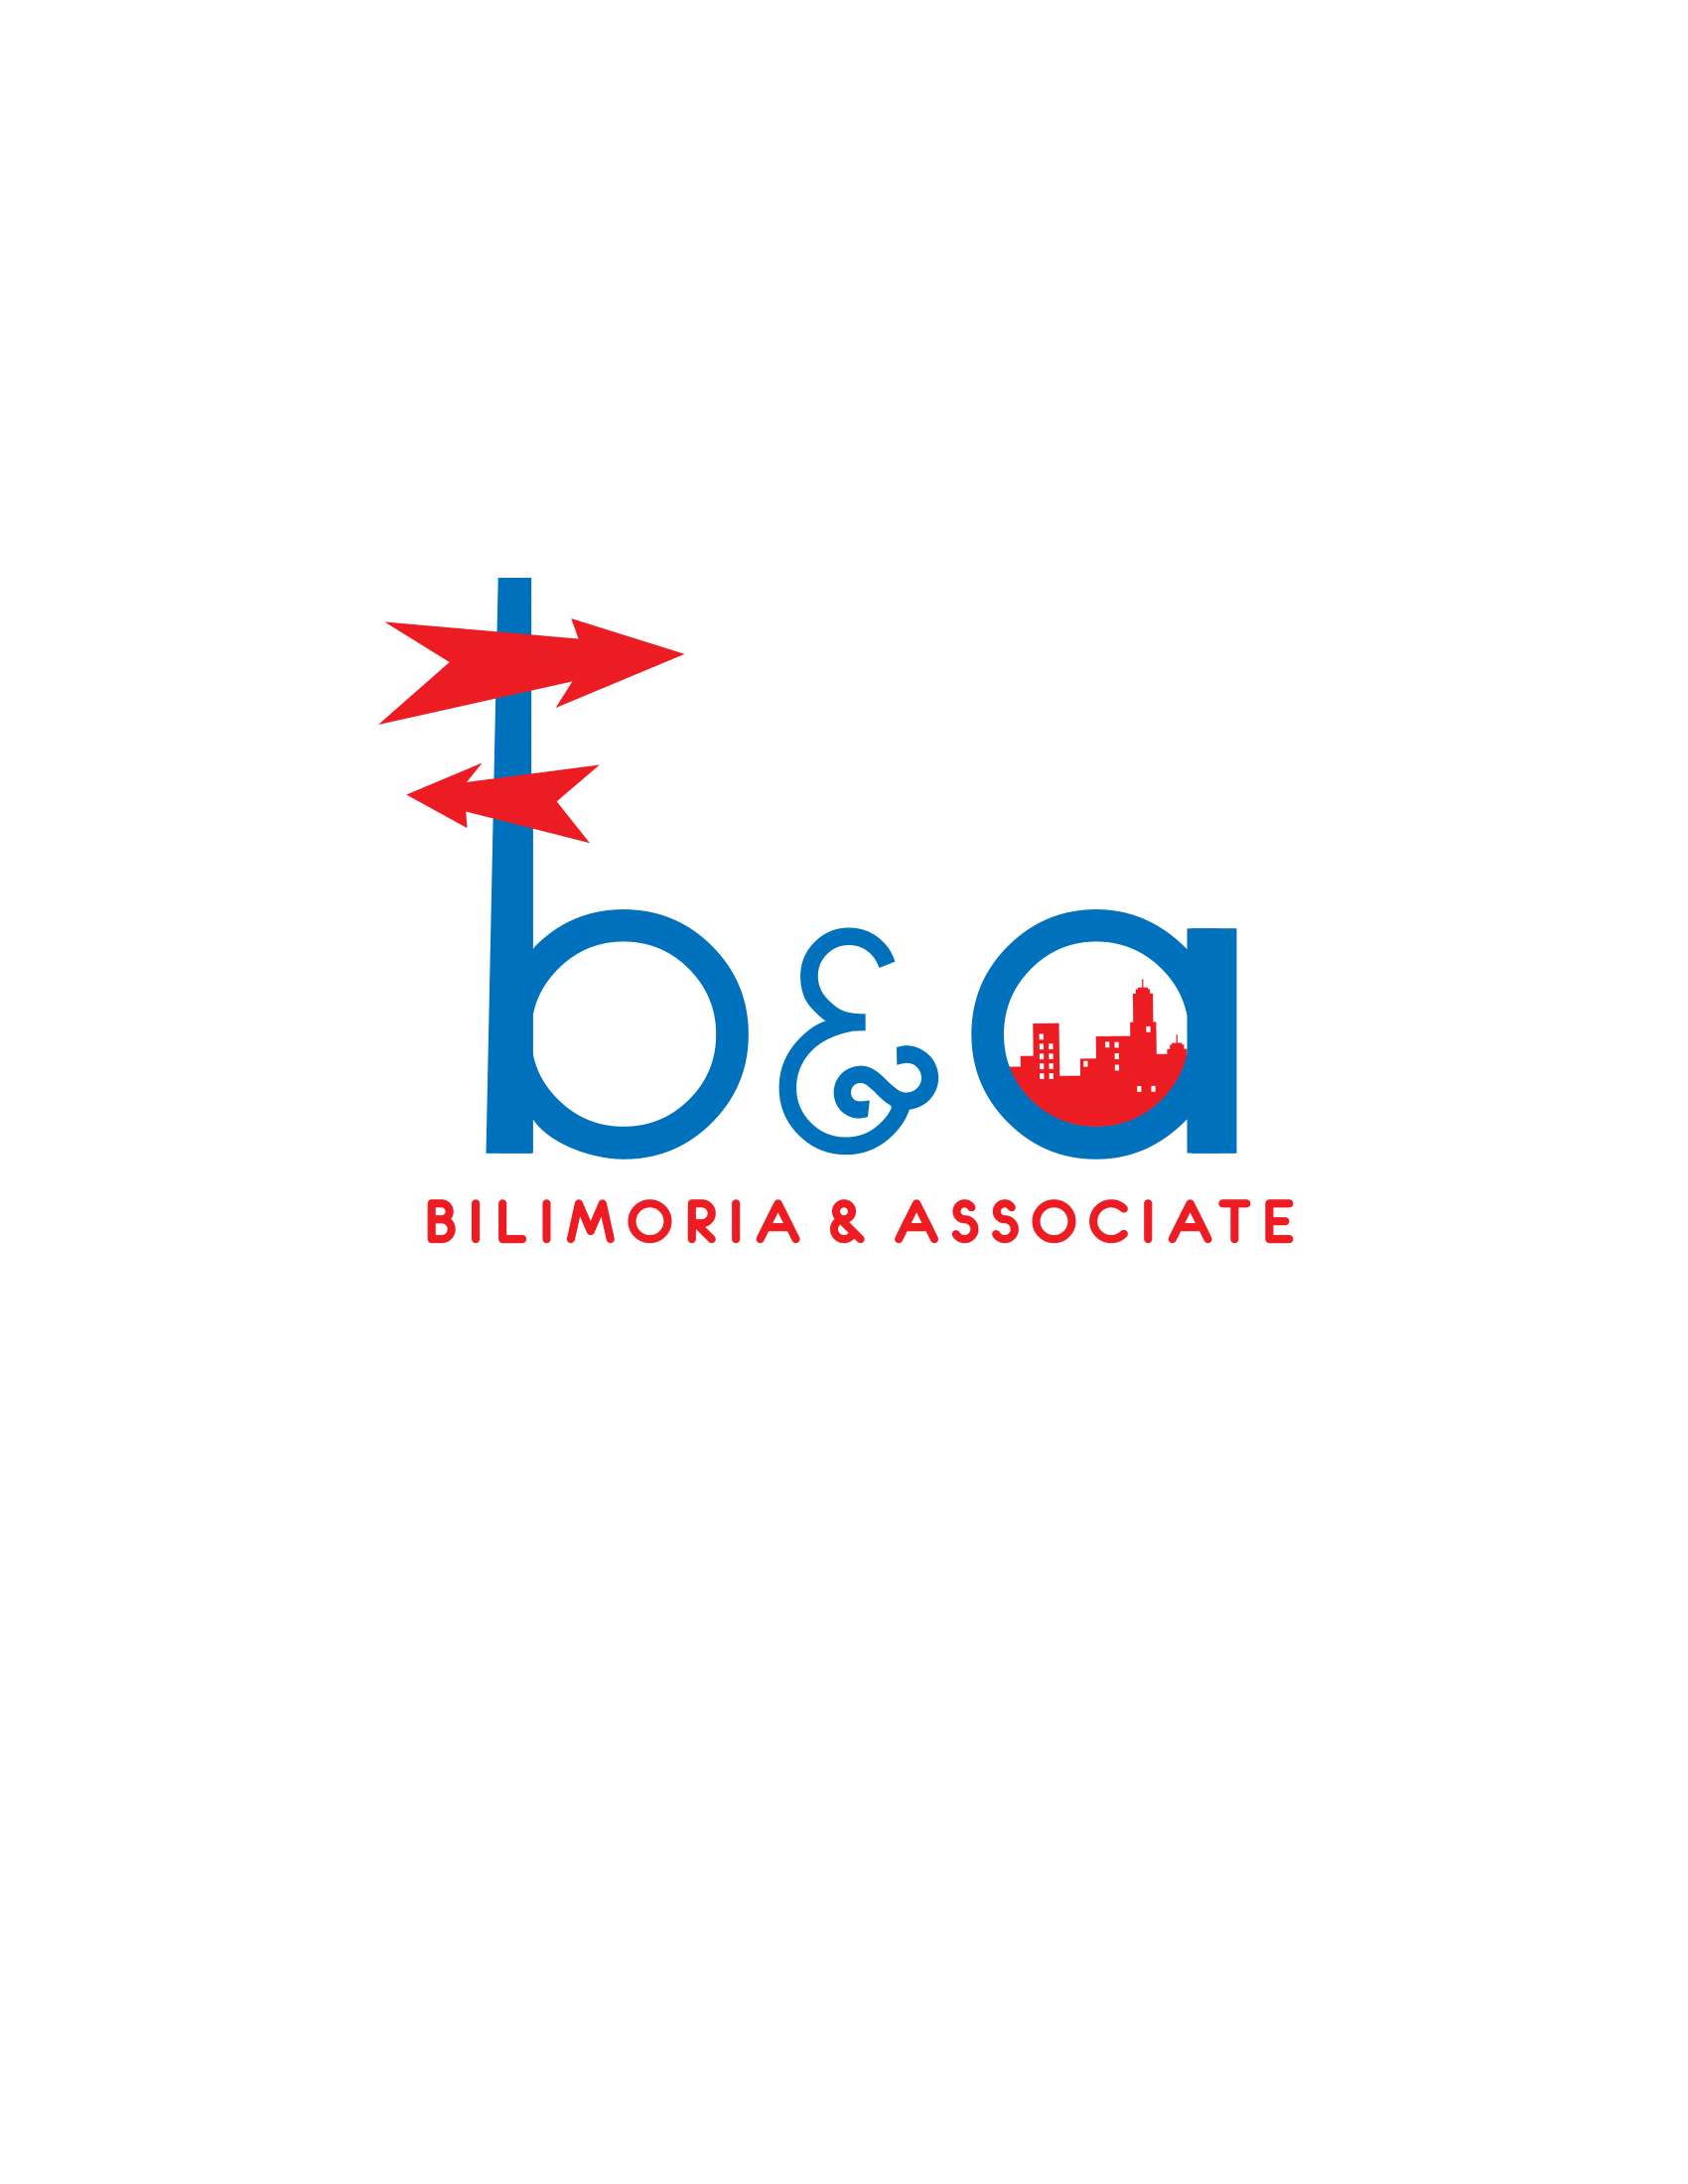 Bilimoria & Associate